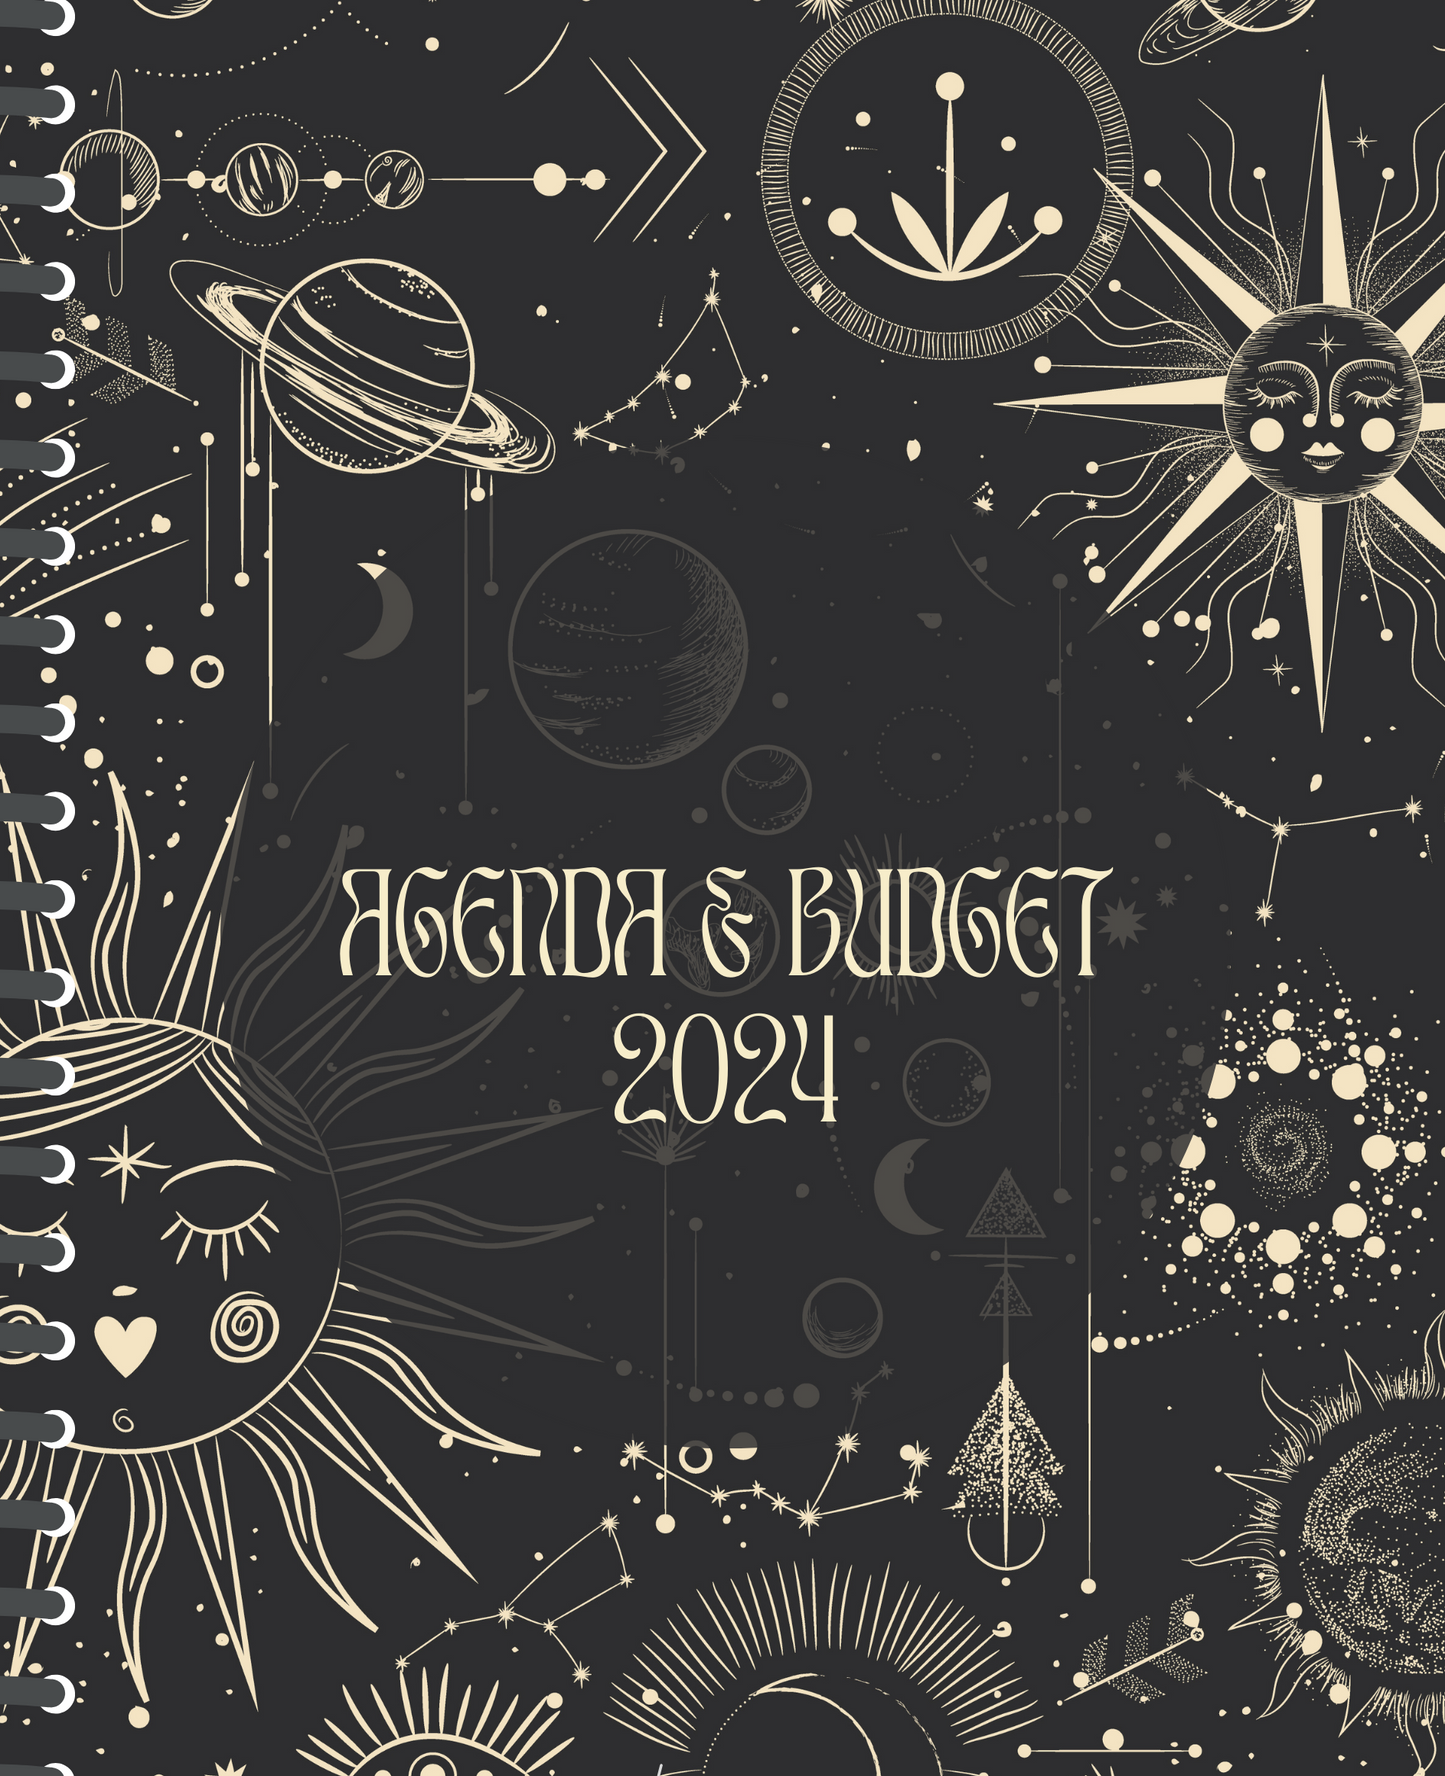 Agenda & budget #66